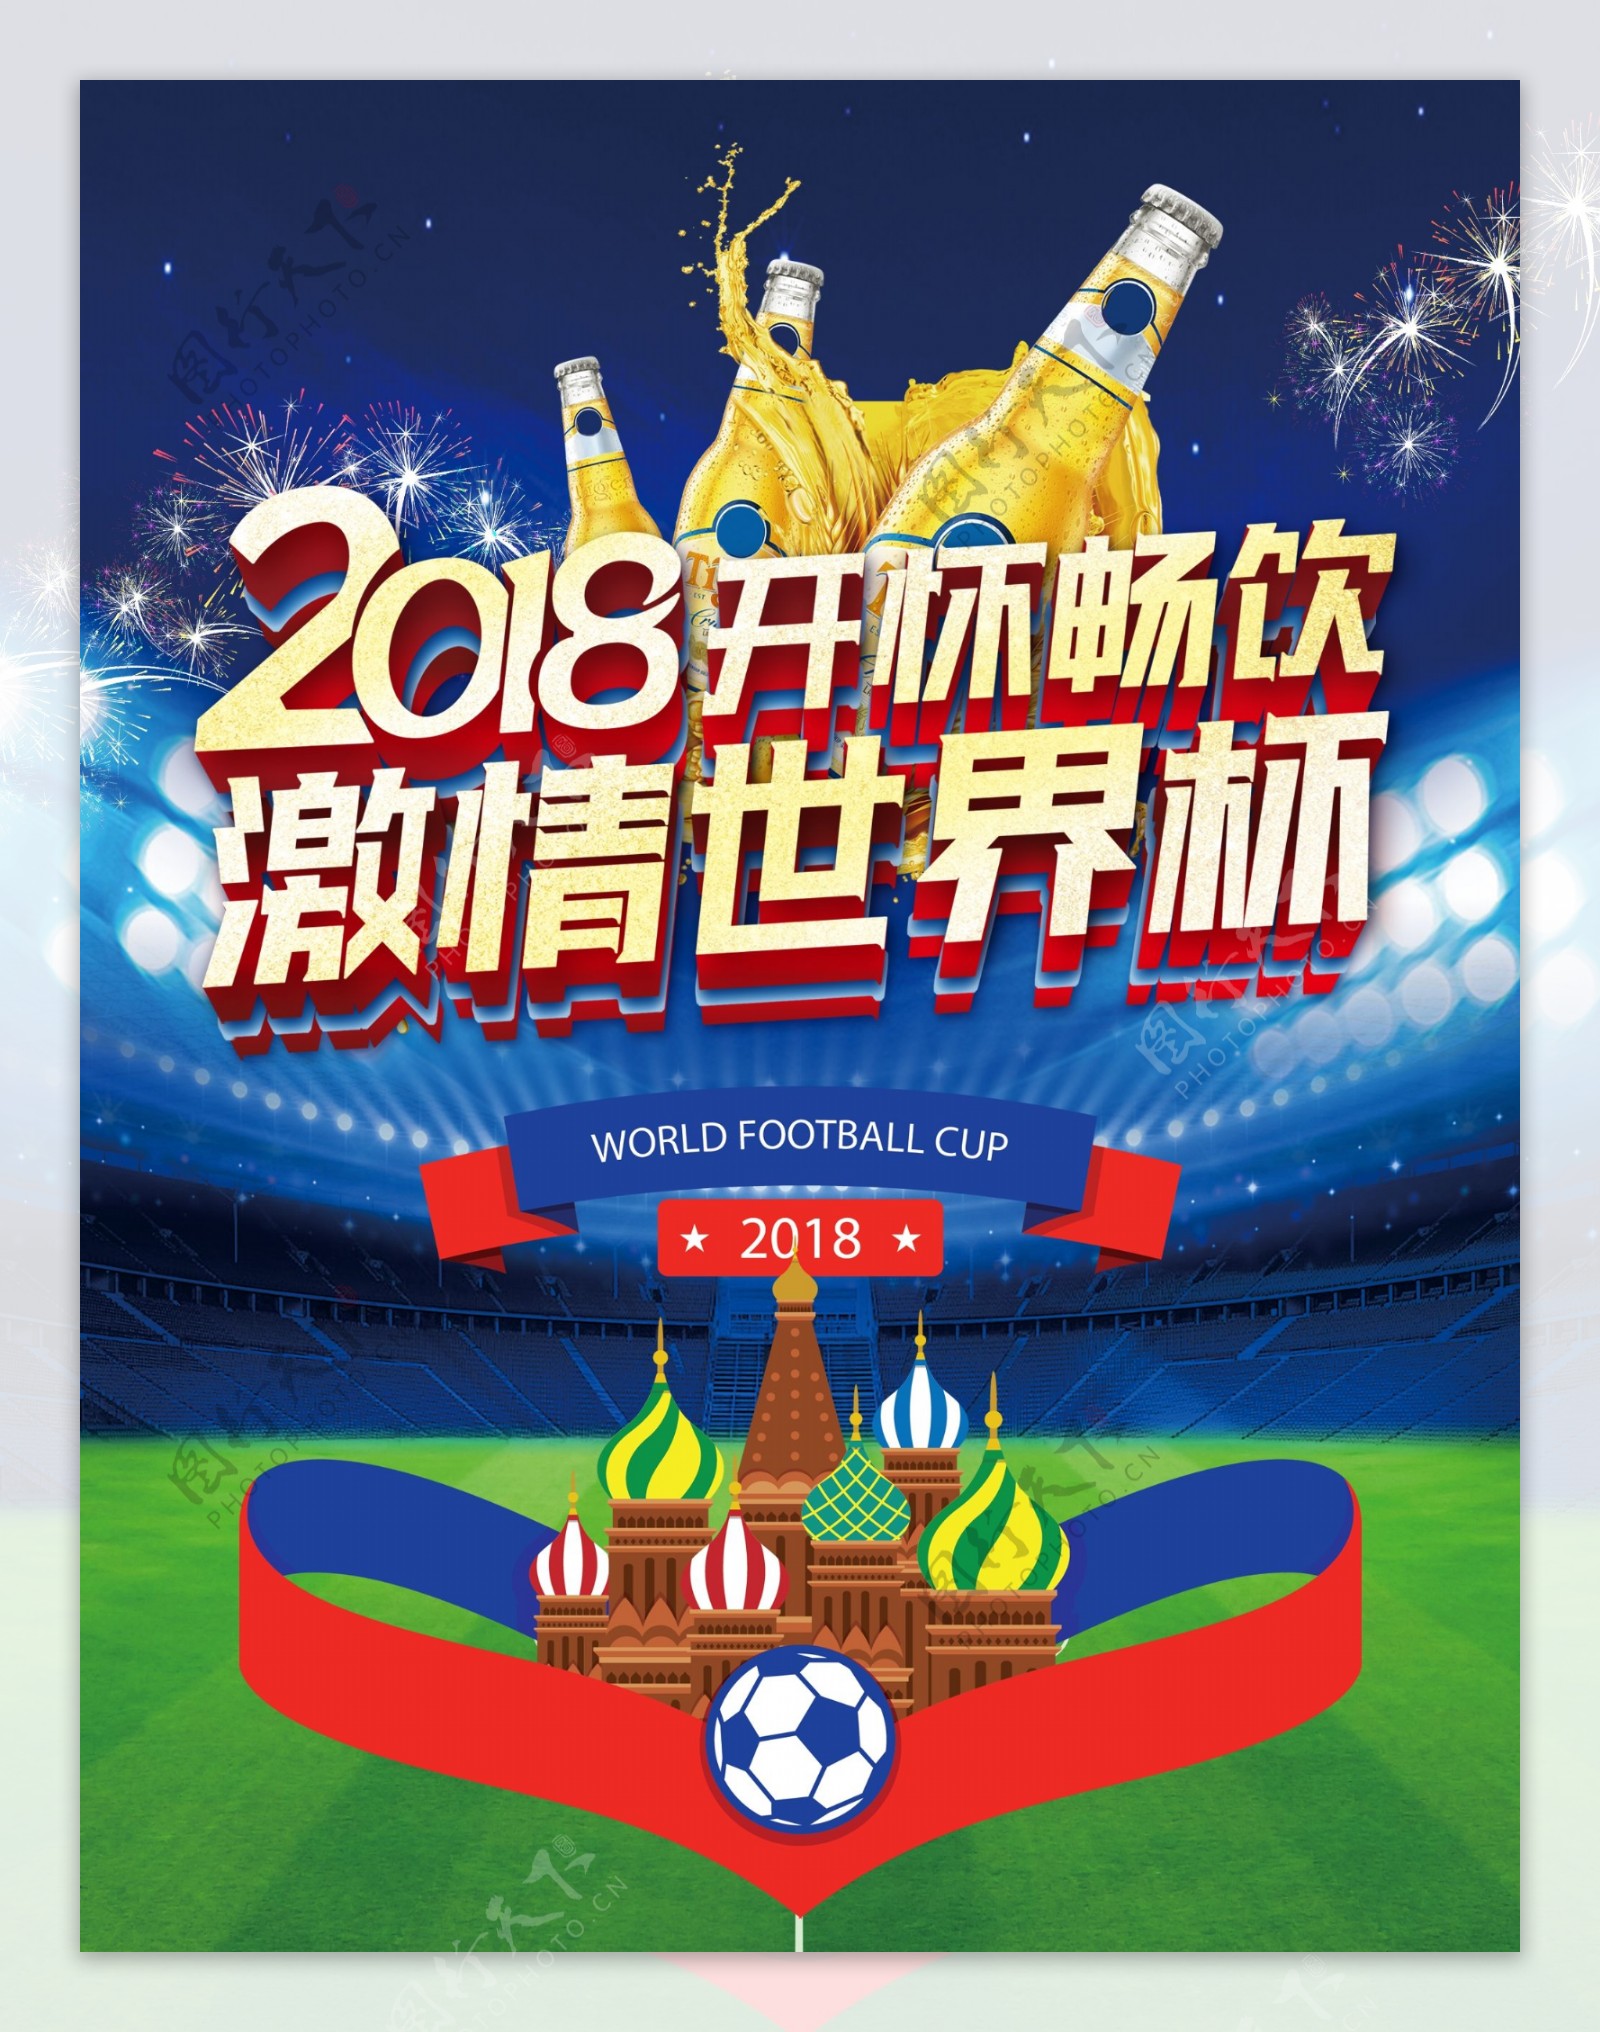 2018激情世界杯啤酒节海报